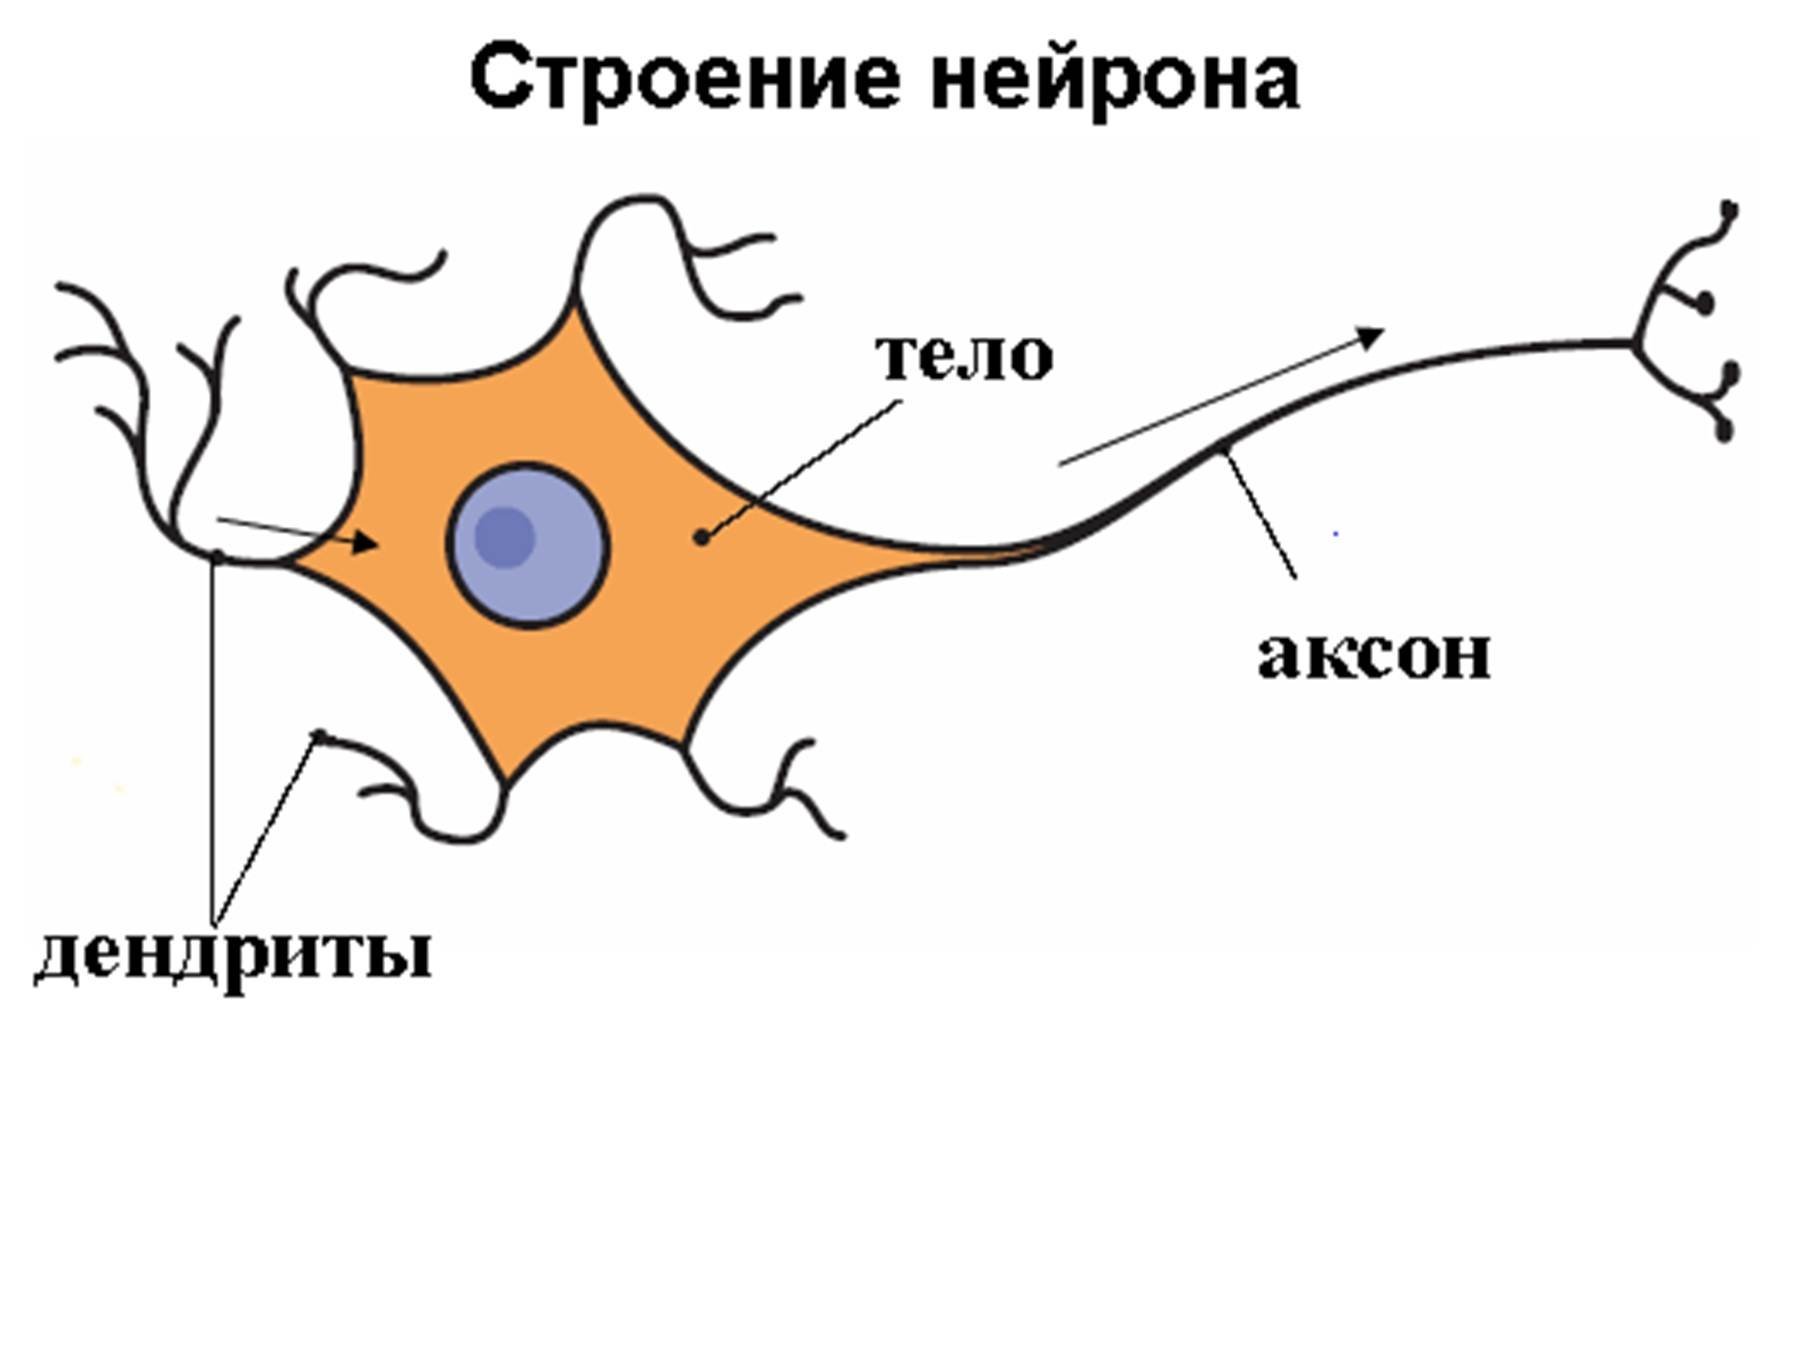 Биология нервные клетки. Дендрит тело нейрона Аксон синапс. Строение нейрона и синапса. Строение нейрона рисунок. Строение аксона нервной клетки.